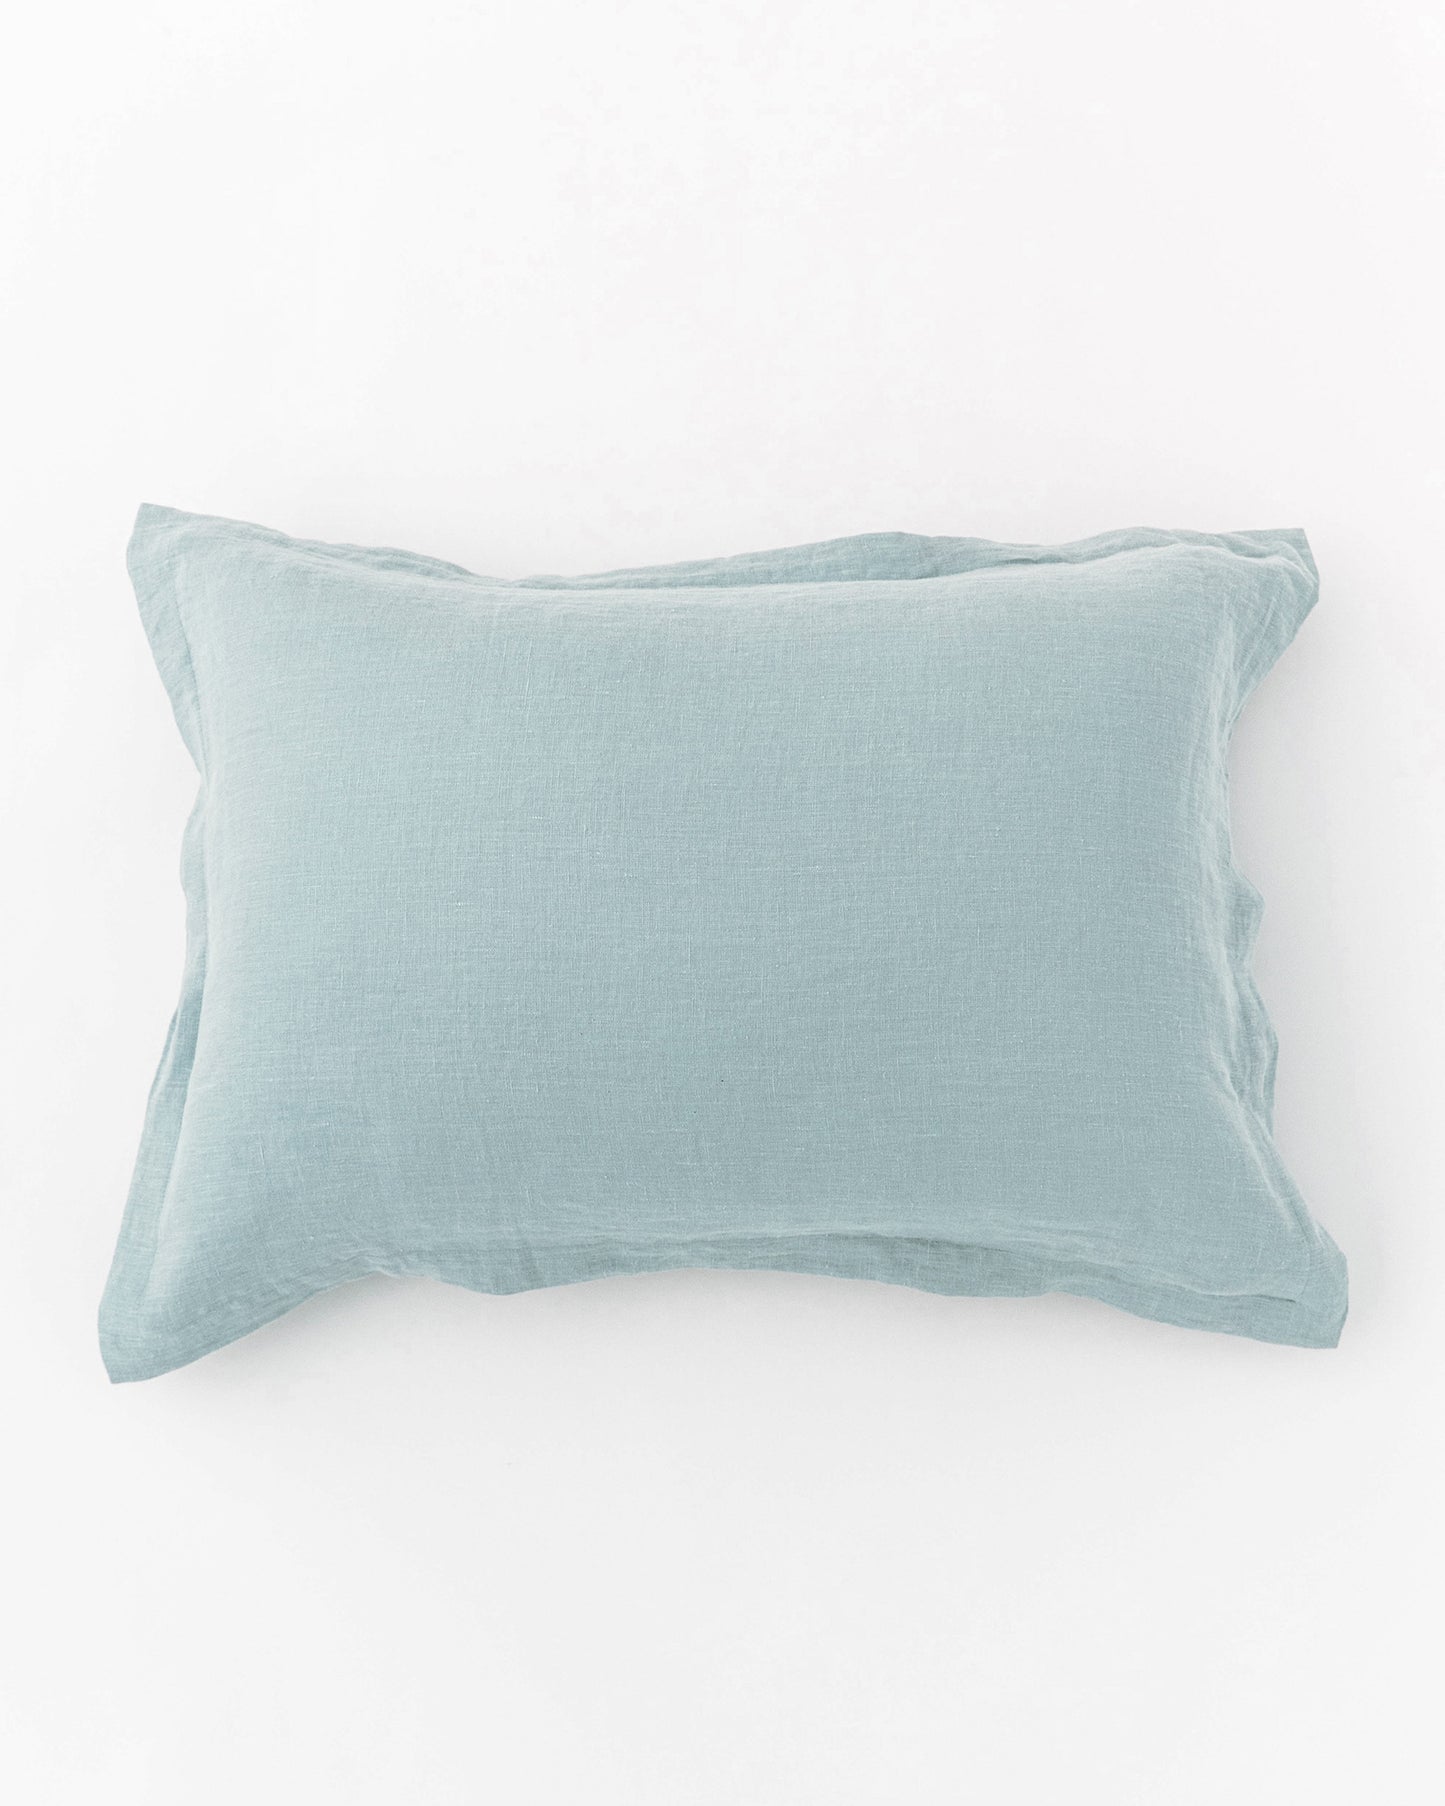 Linen pillow sham in Dusty blue | MagicLinen